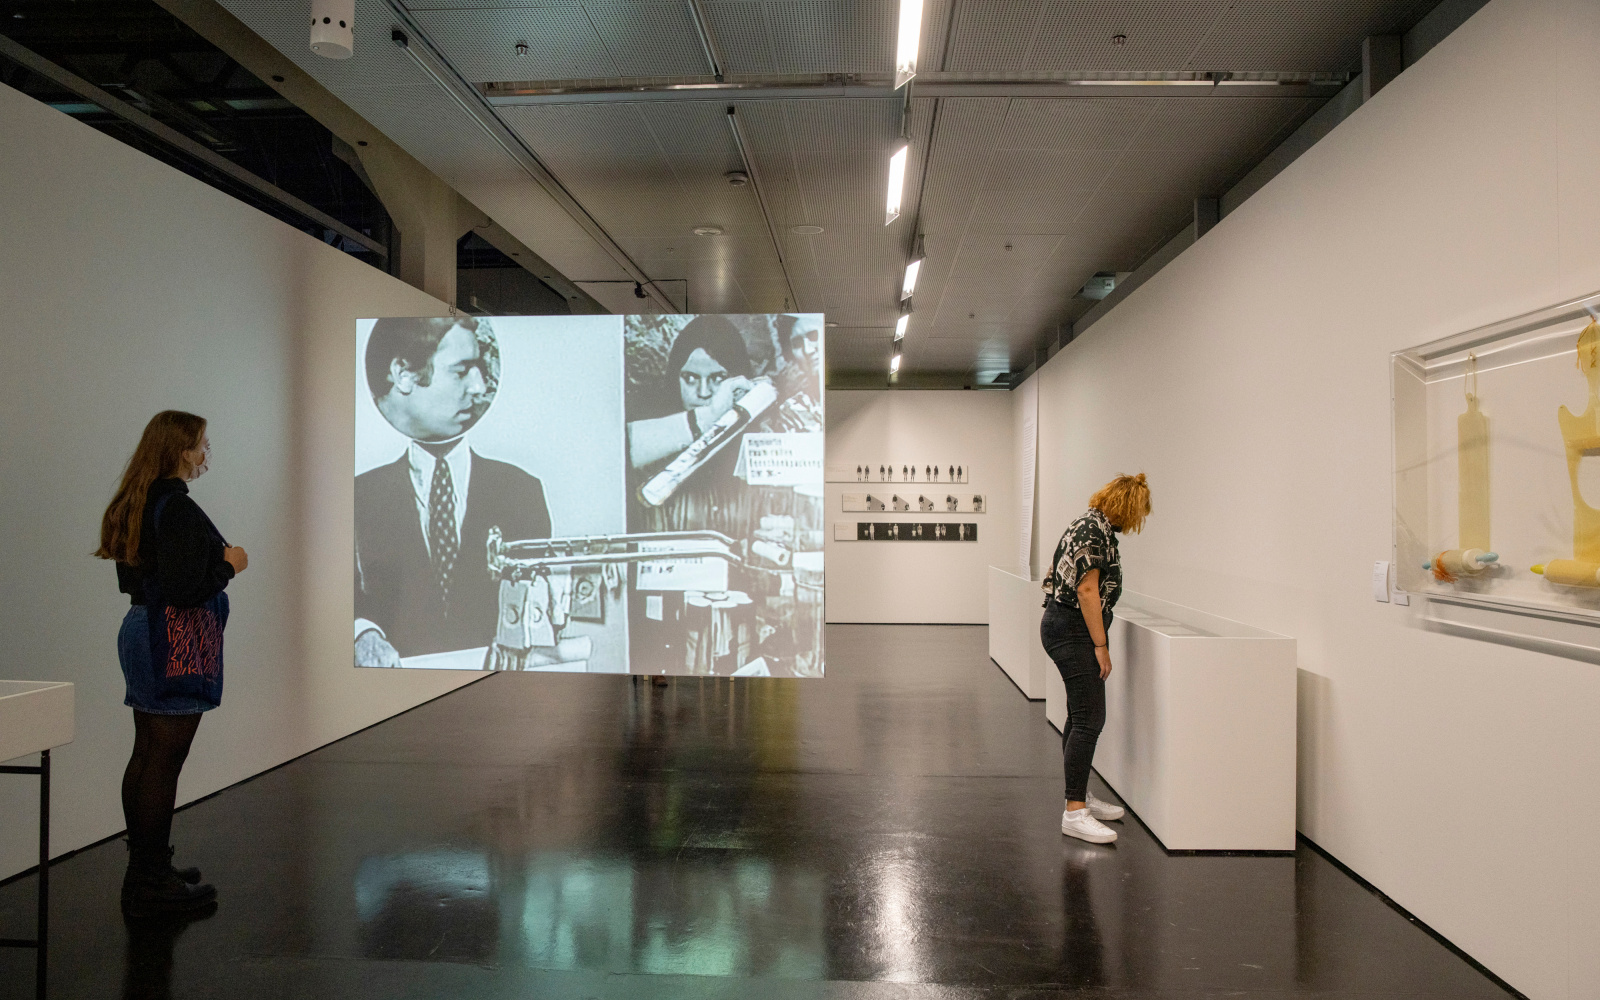 Zwei junge Frauen im Ausstellungsraum. Eine steht an der linken Wand und die andere schaut an der rechten Wand in Schaukästen. Zwischen ihnen spannt sich eine Leinwand, auf der ein Filmausschnitt mit Menschen zu sehen ist.